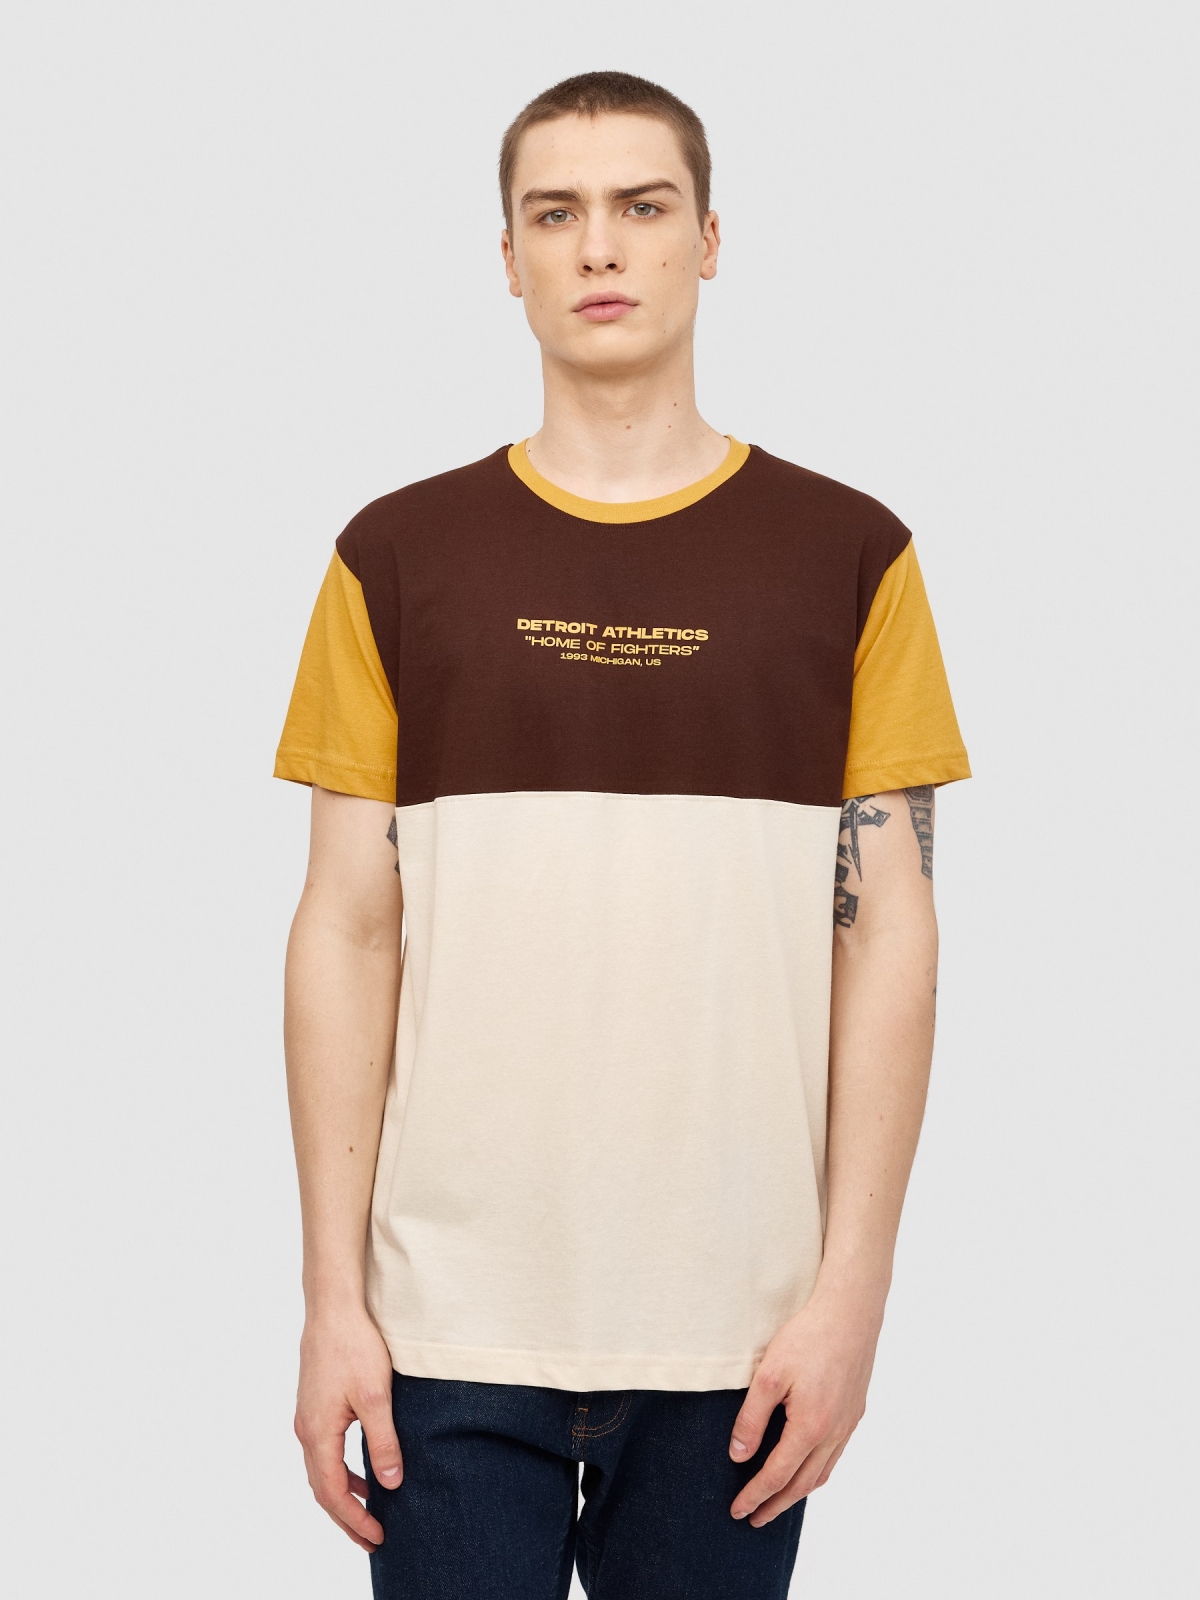 Bloco de cores da t-shirt com texto areia vista meia frontal